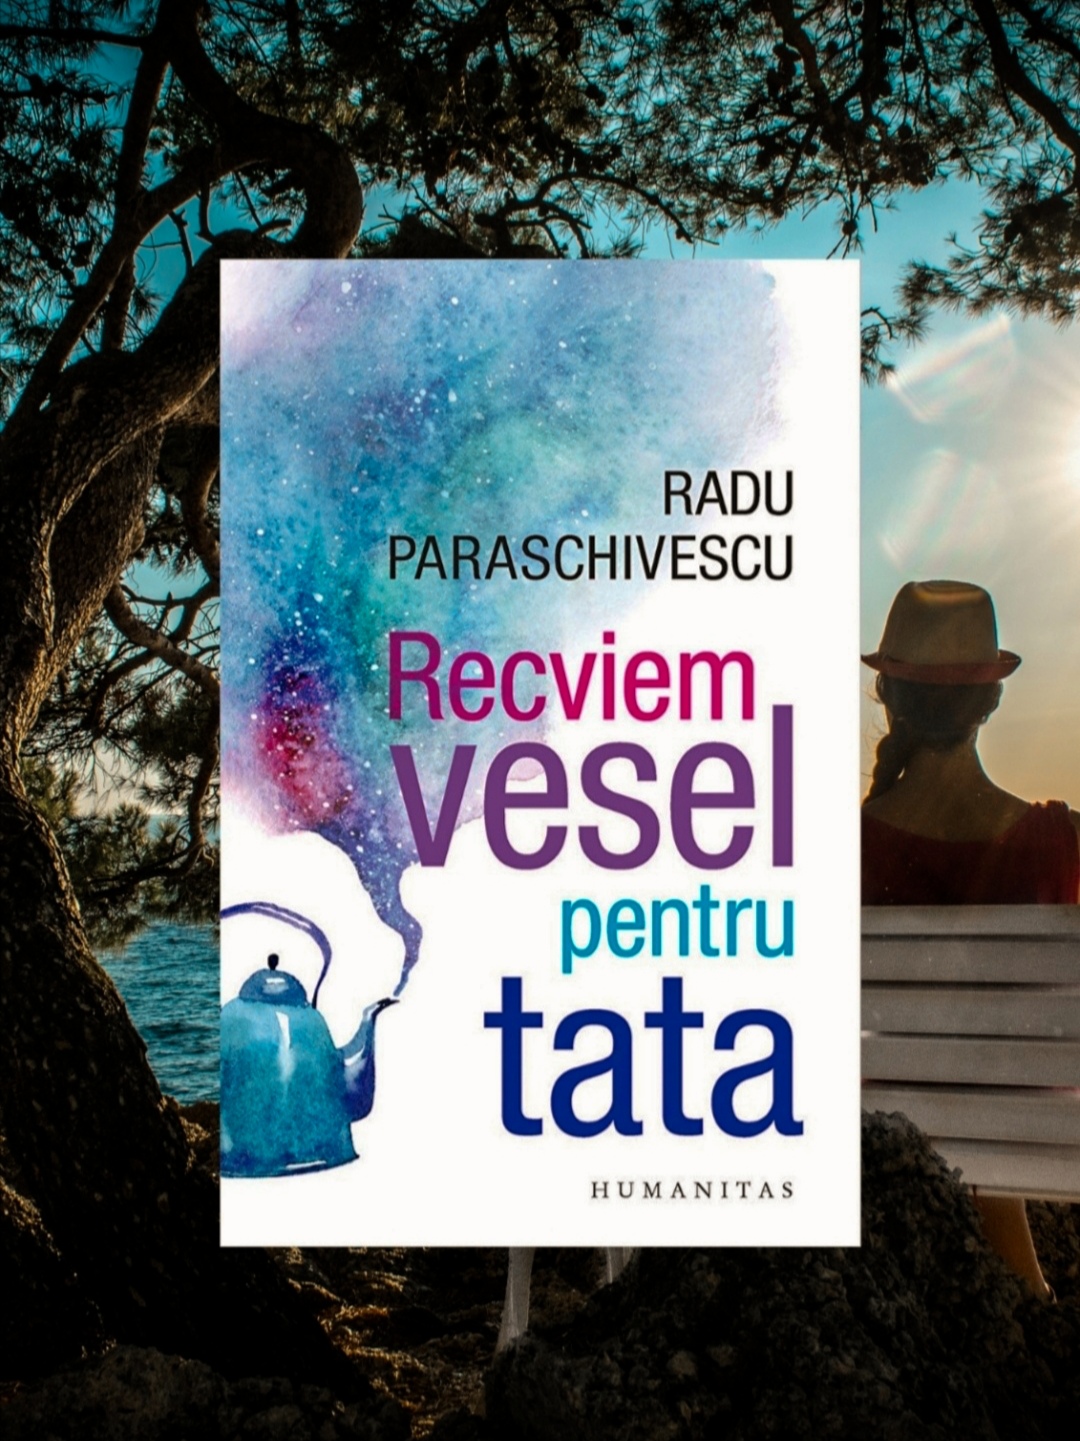 Recveim vesel pentru tata, recenzie carte, Radu Paraschivescu